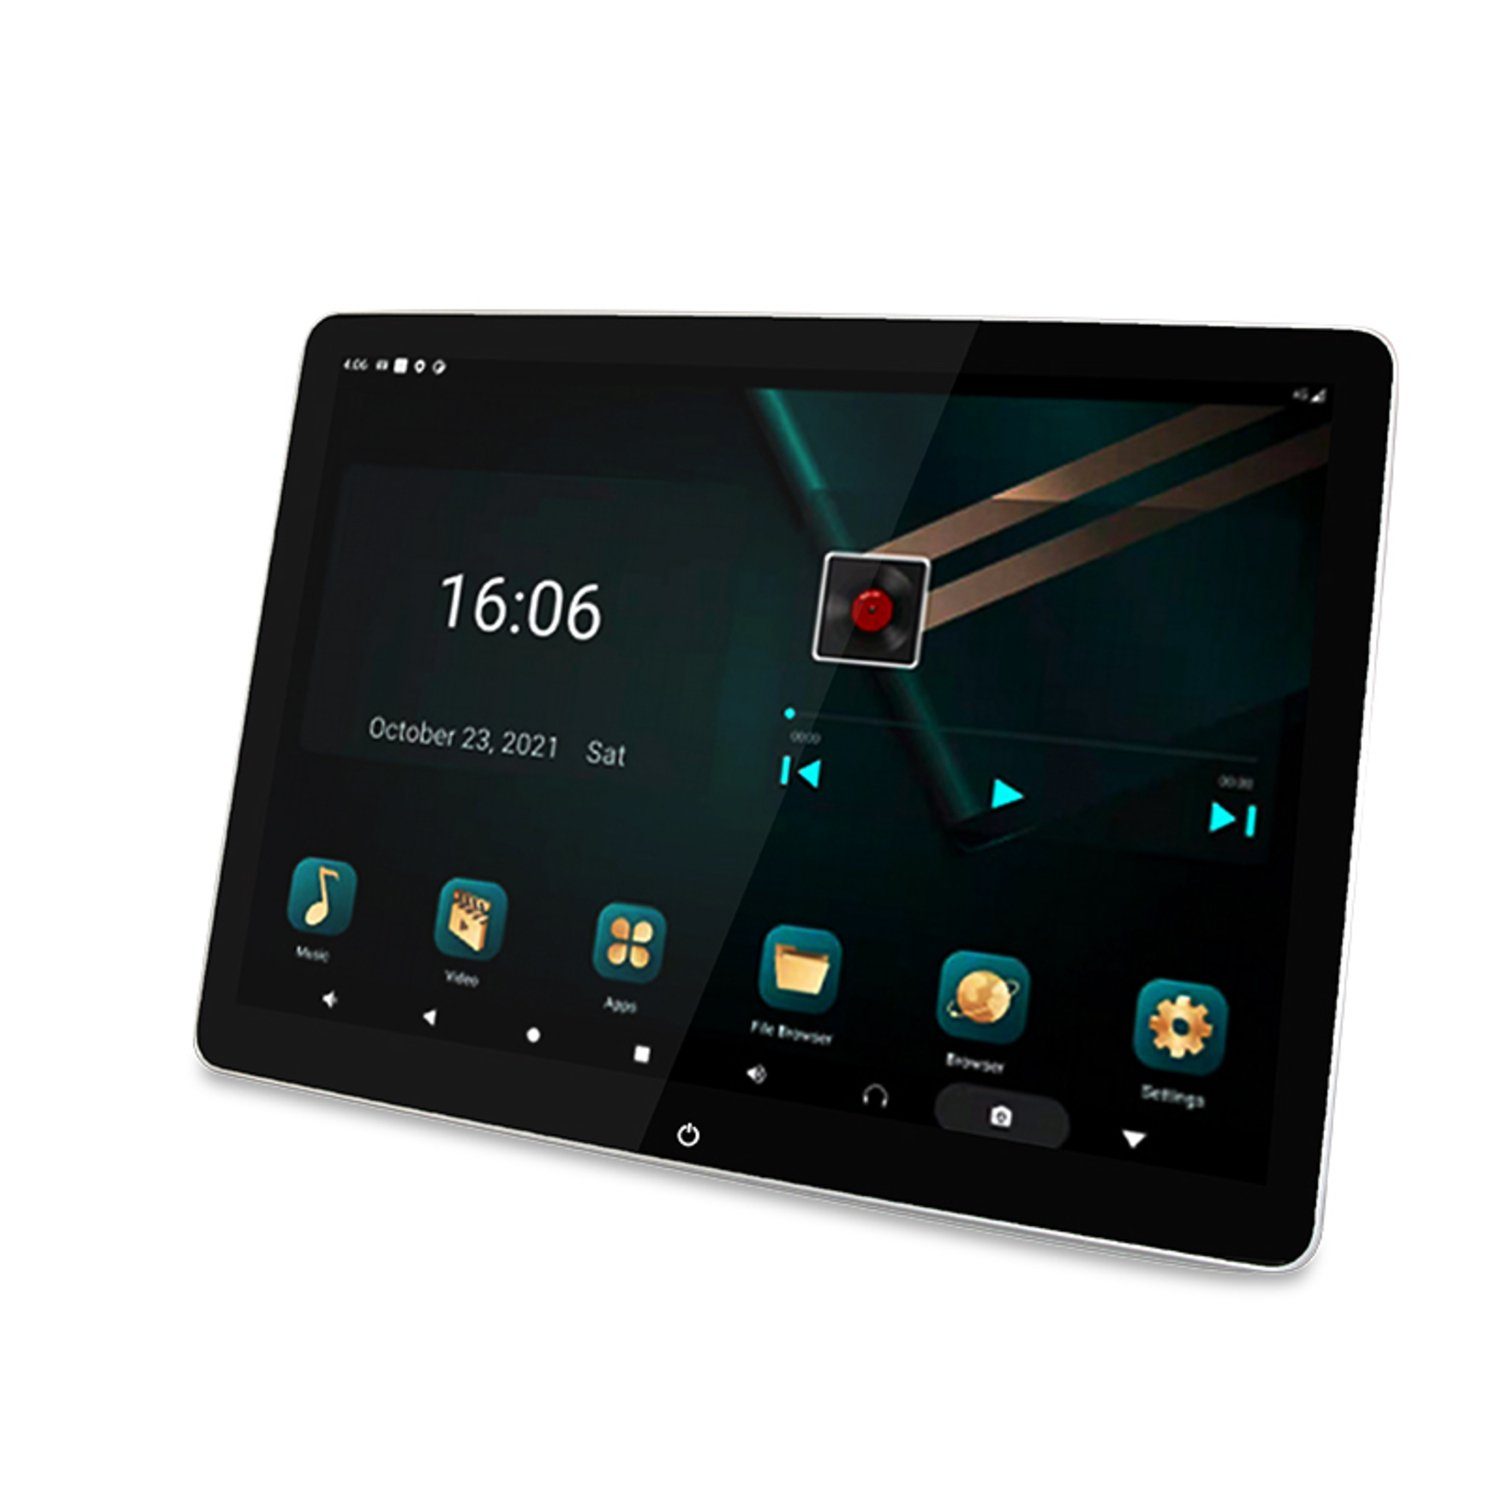 TAFFIO Univers. Android Bluetooth Auto 12"Touch Monitor Navigationsgerät Kopfstützen WiFi LTE